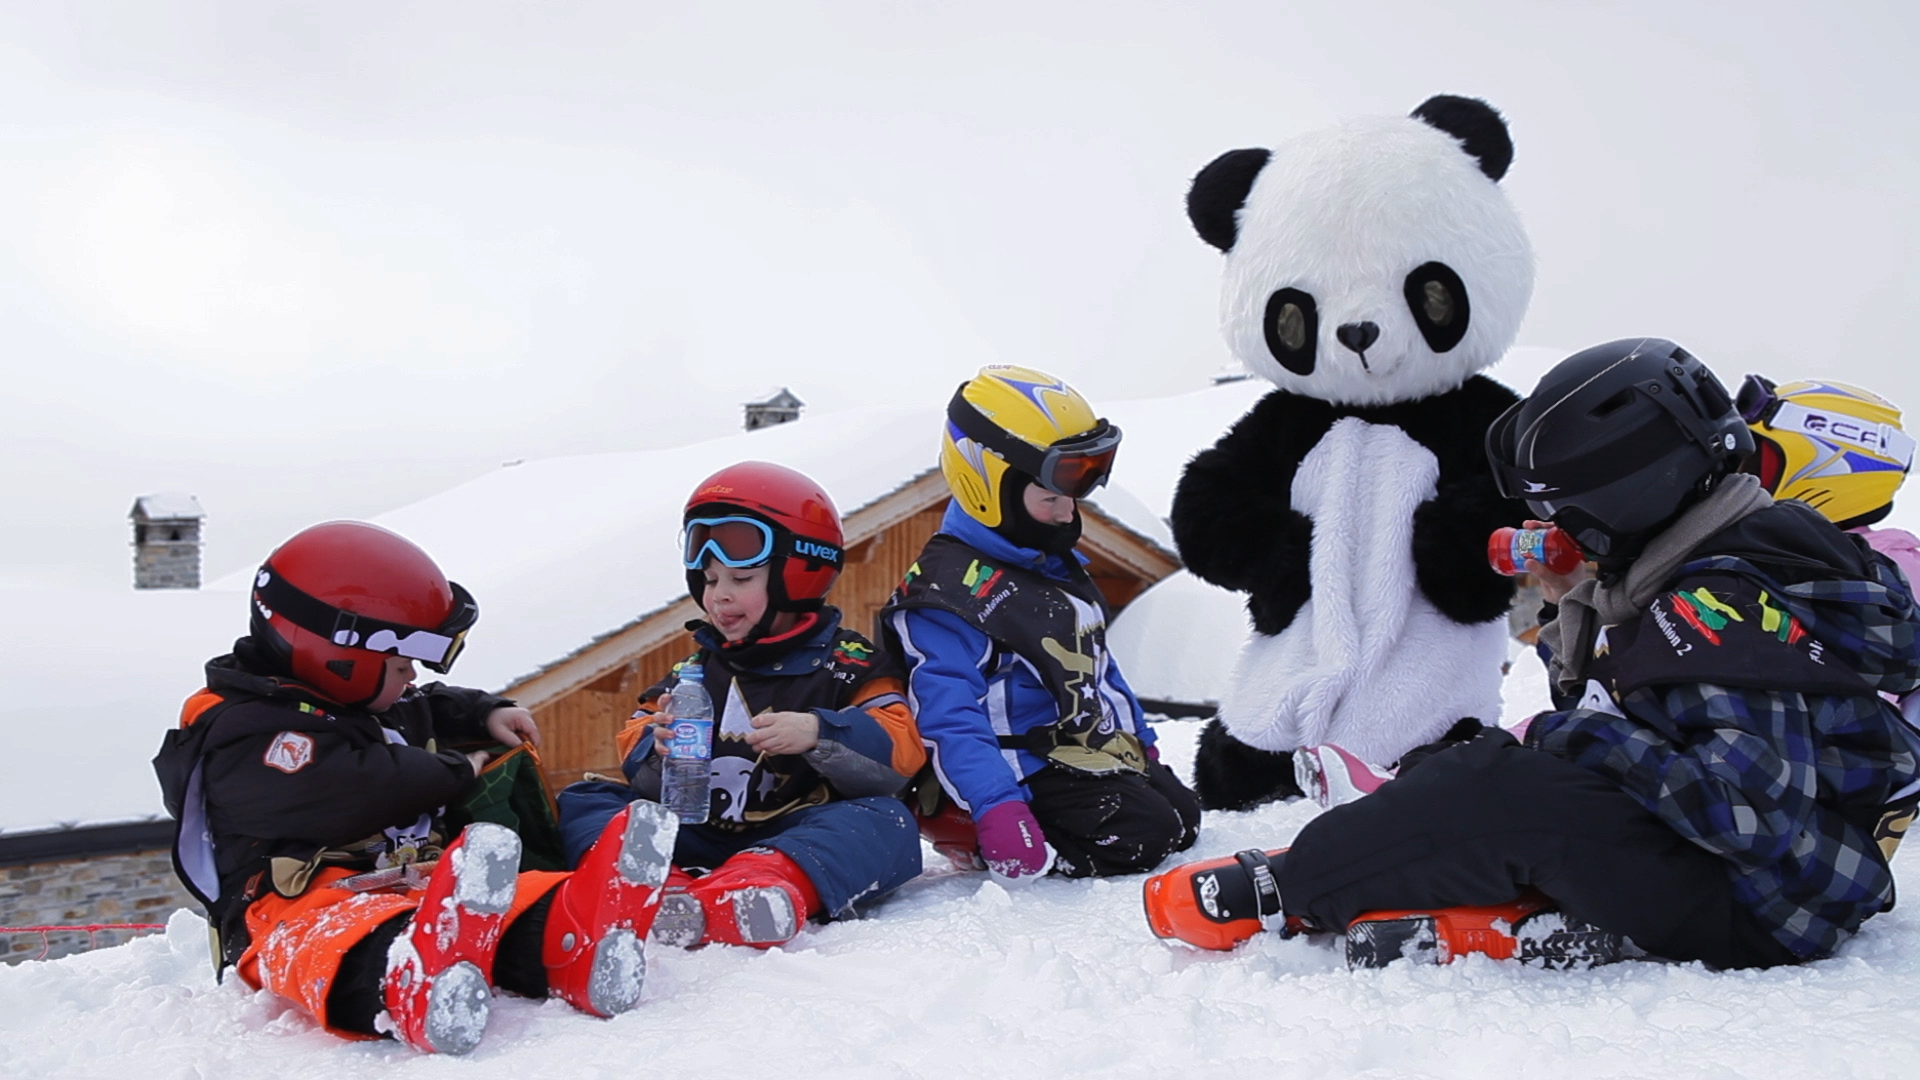 Premières sensations de glisse au Village Yeti, encadrées par des moniteurs de ski diplômés